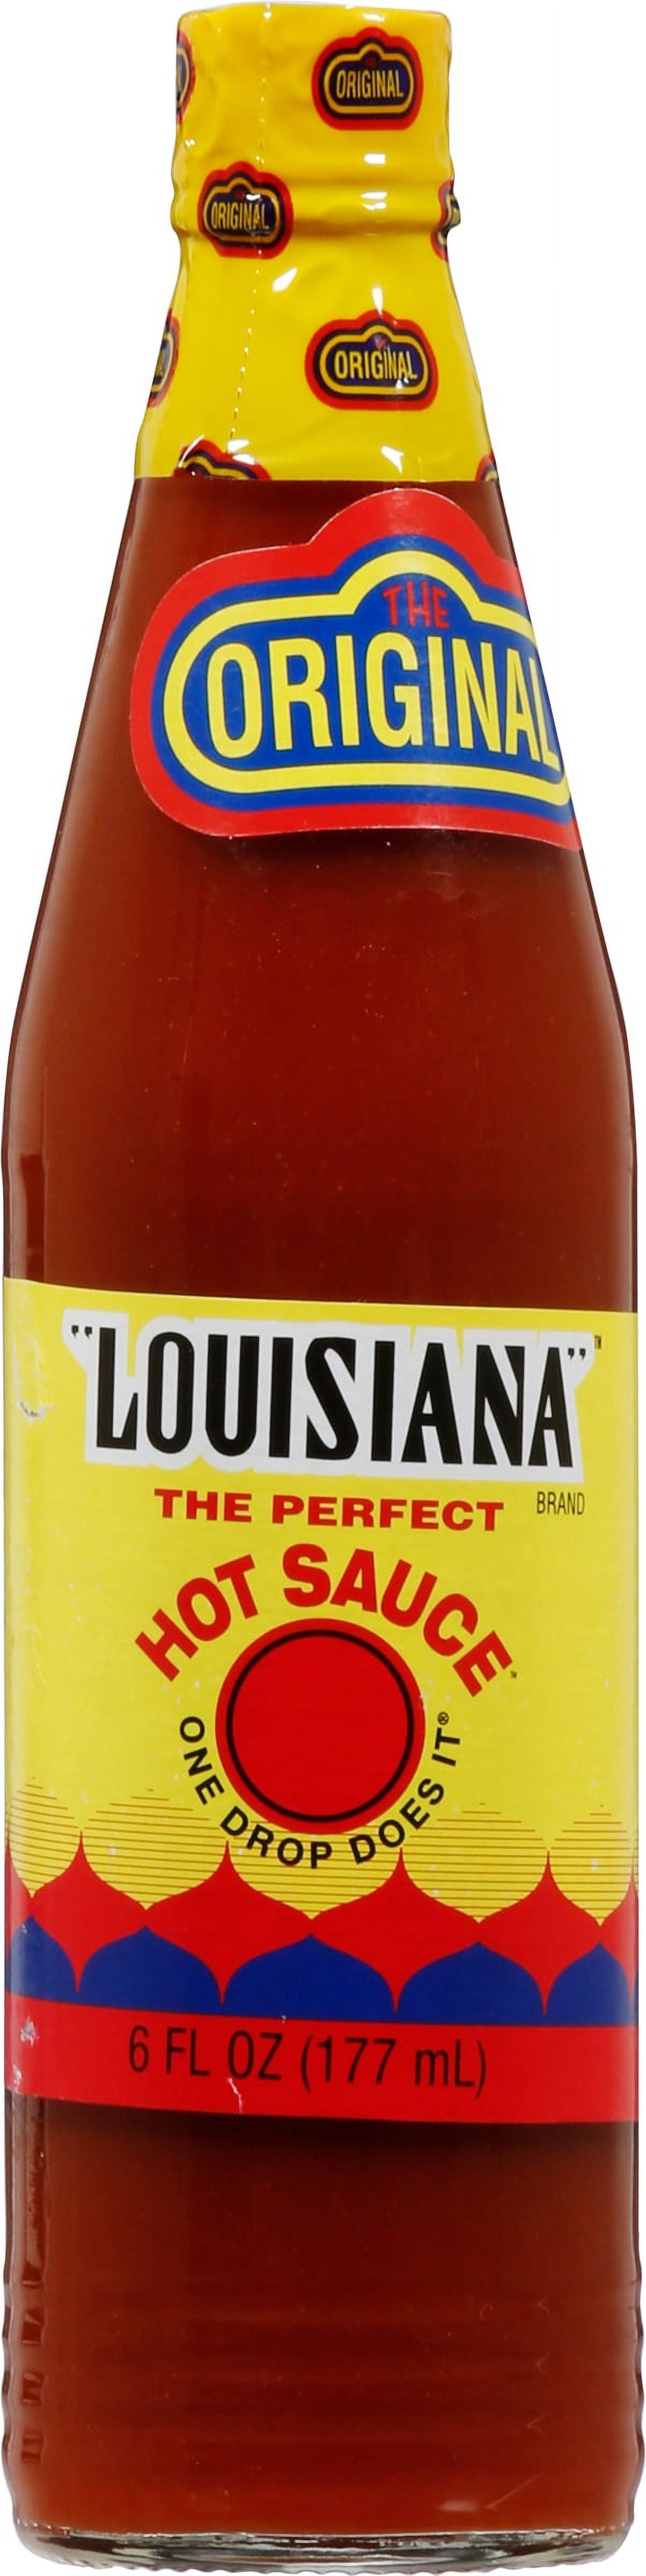 Louisiana Brand Hot Spots - 6 Variety Pack by LOUISIANA at Fleet Farm